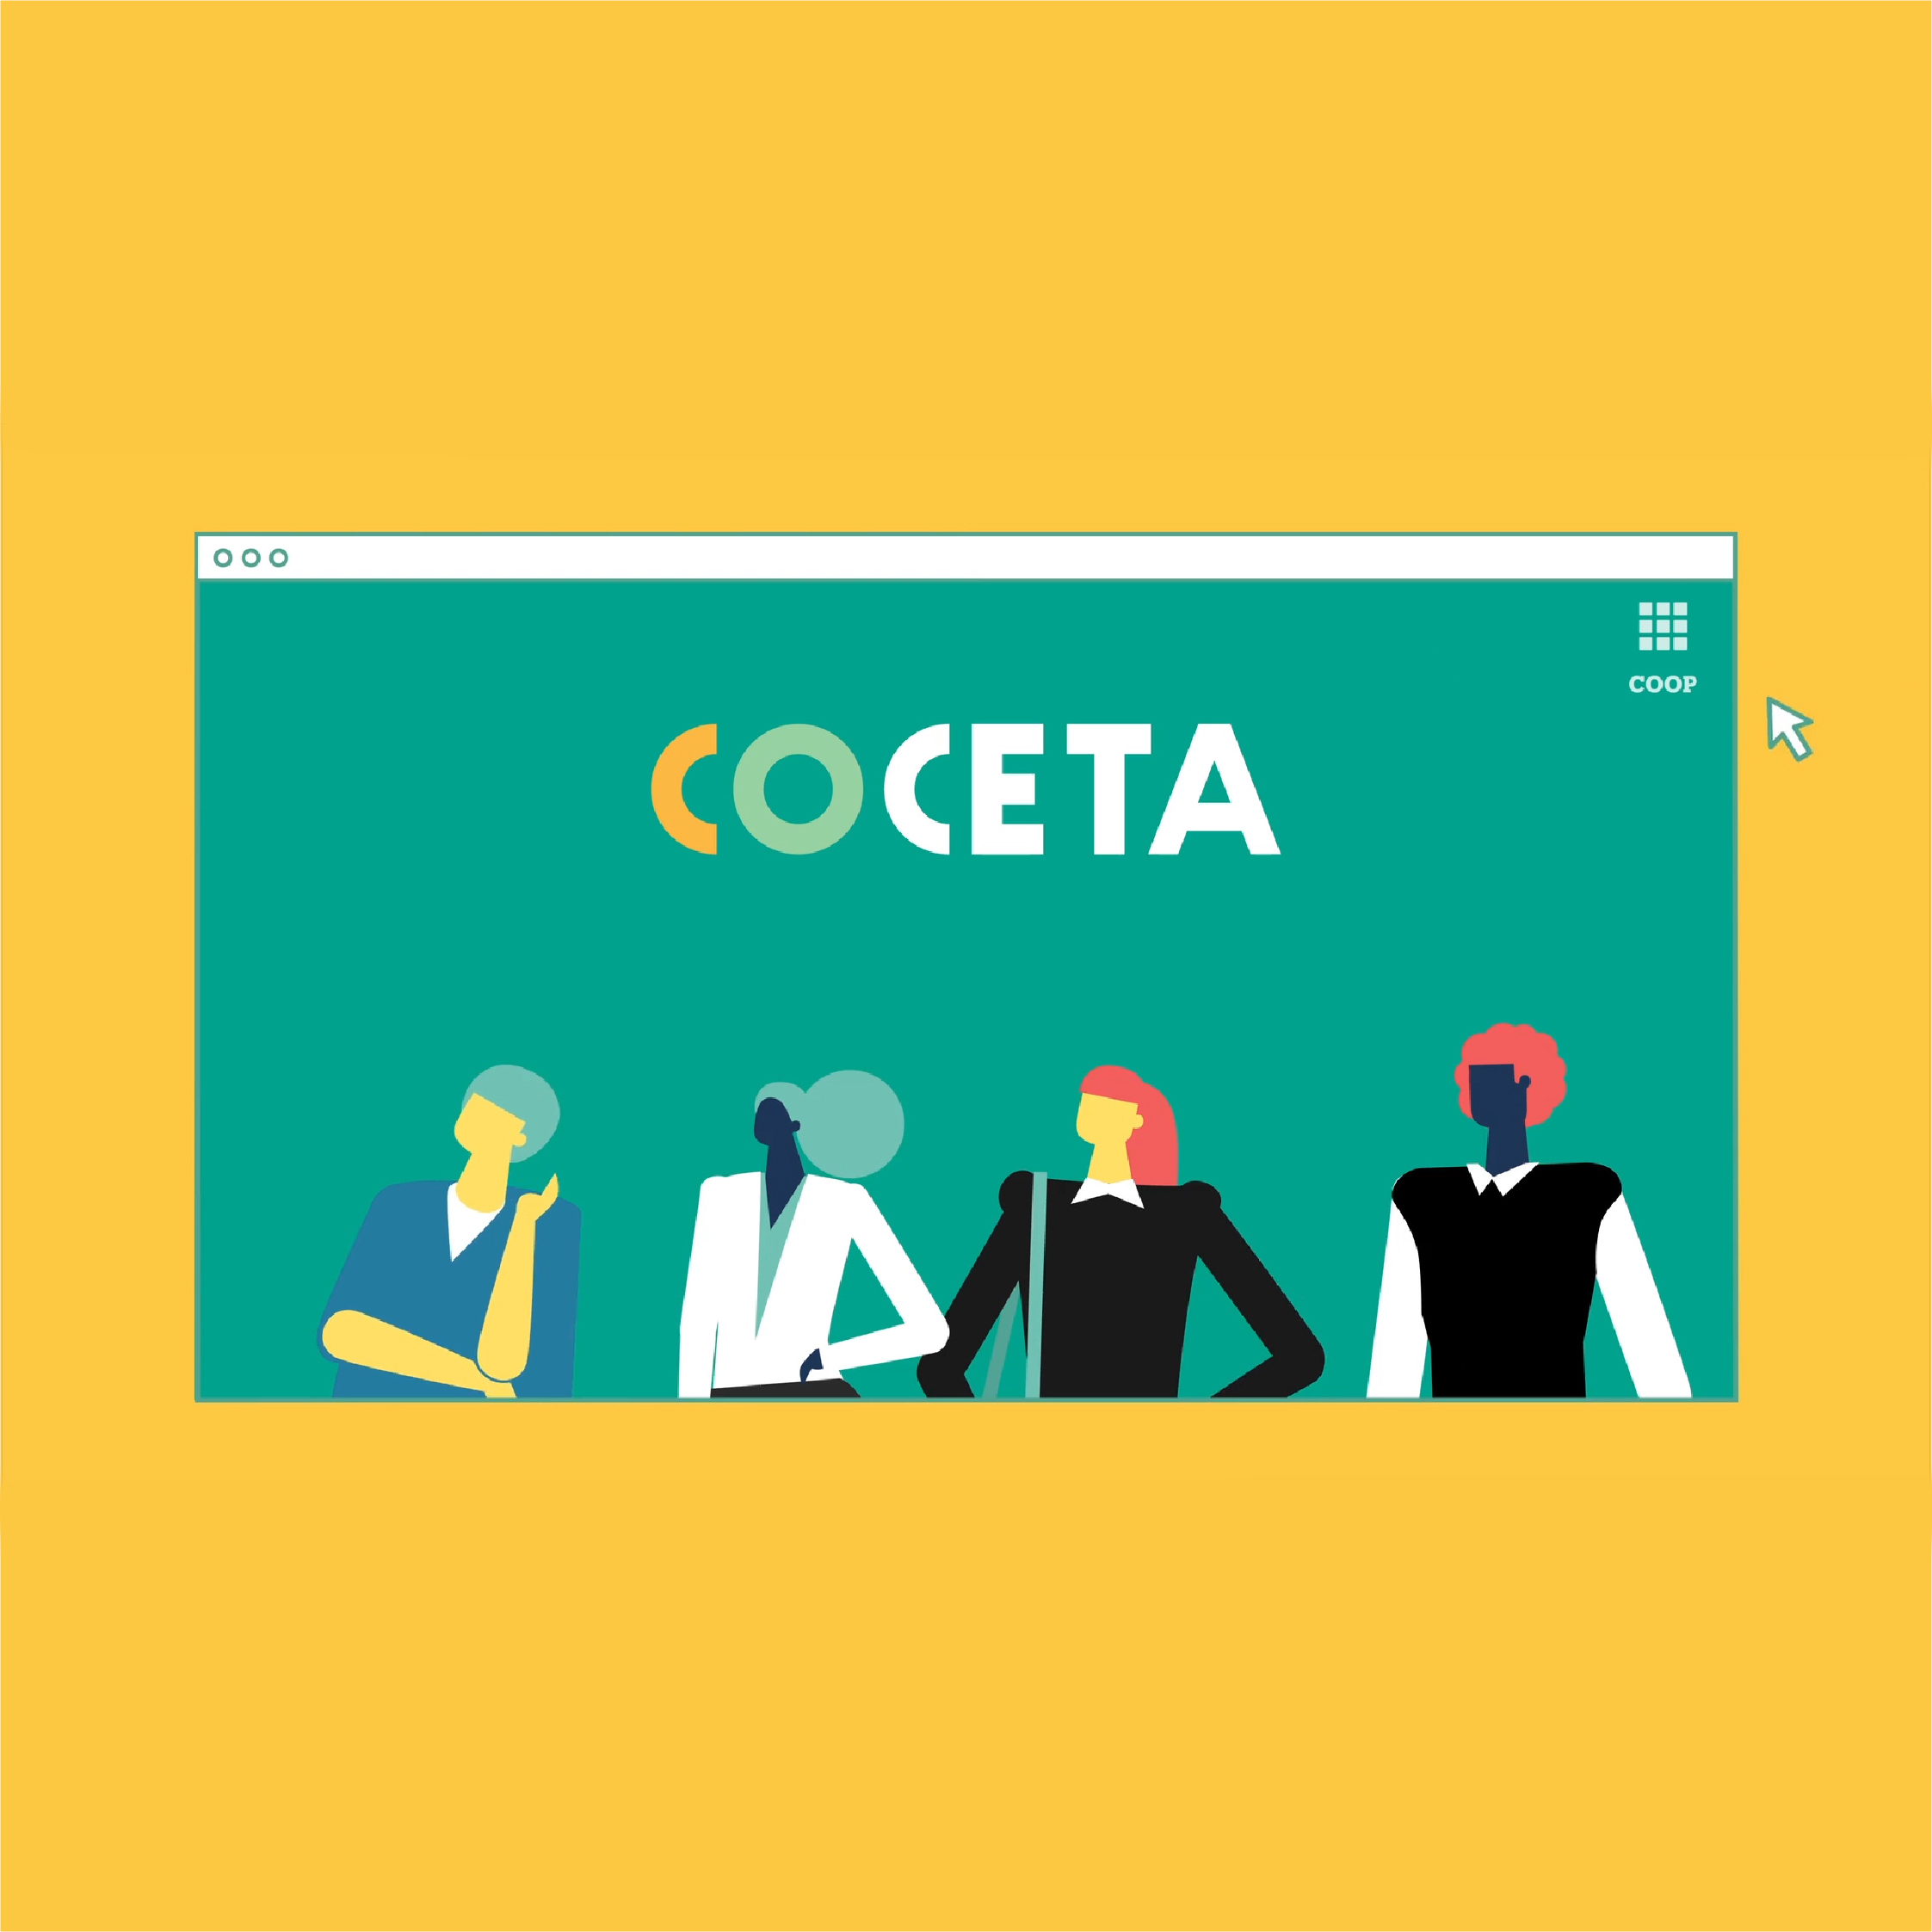 COCETA | COVID by Colectivo Verbena - Creative Work